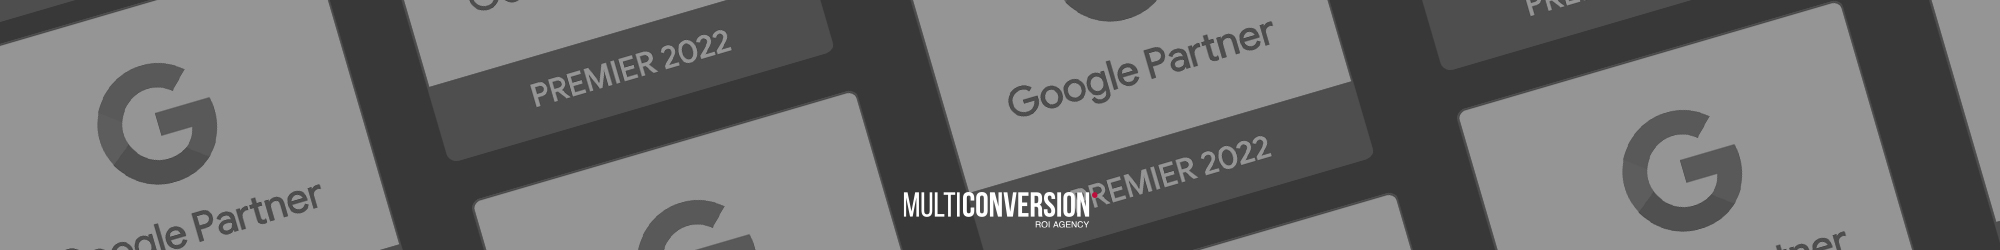 Multiconversion forma parte del 3% de agencias reconocidas como Google Partner Premier este 2022